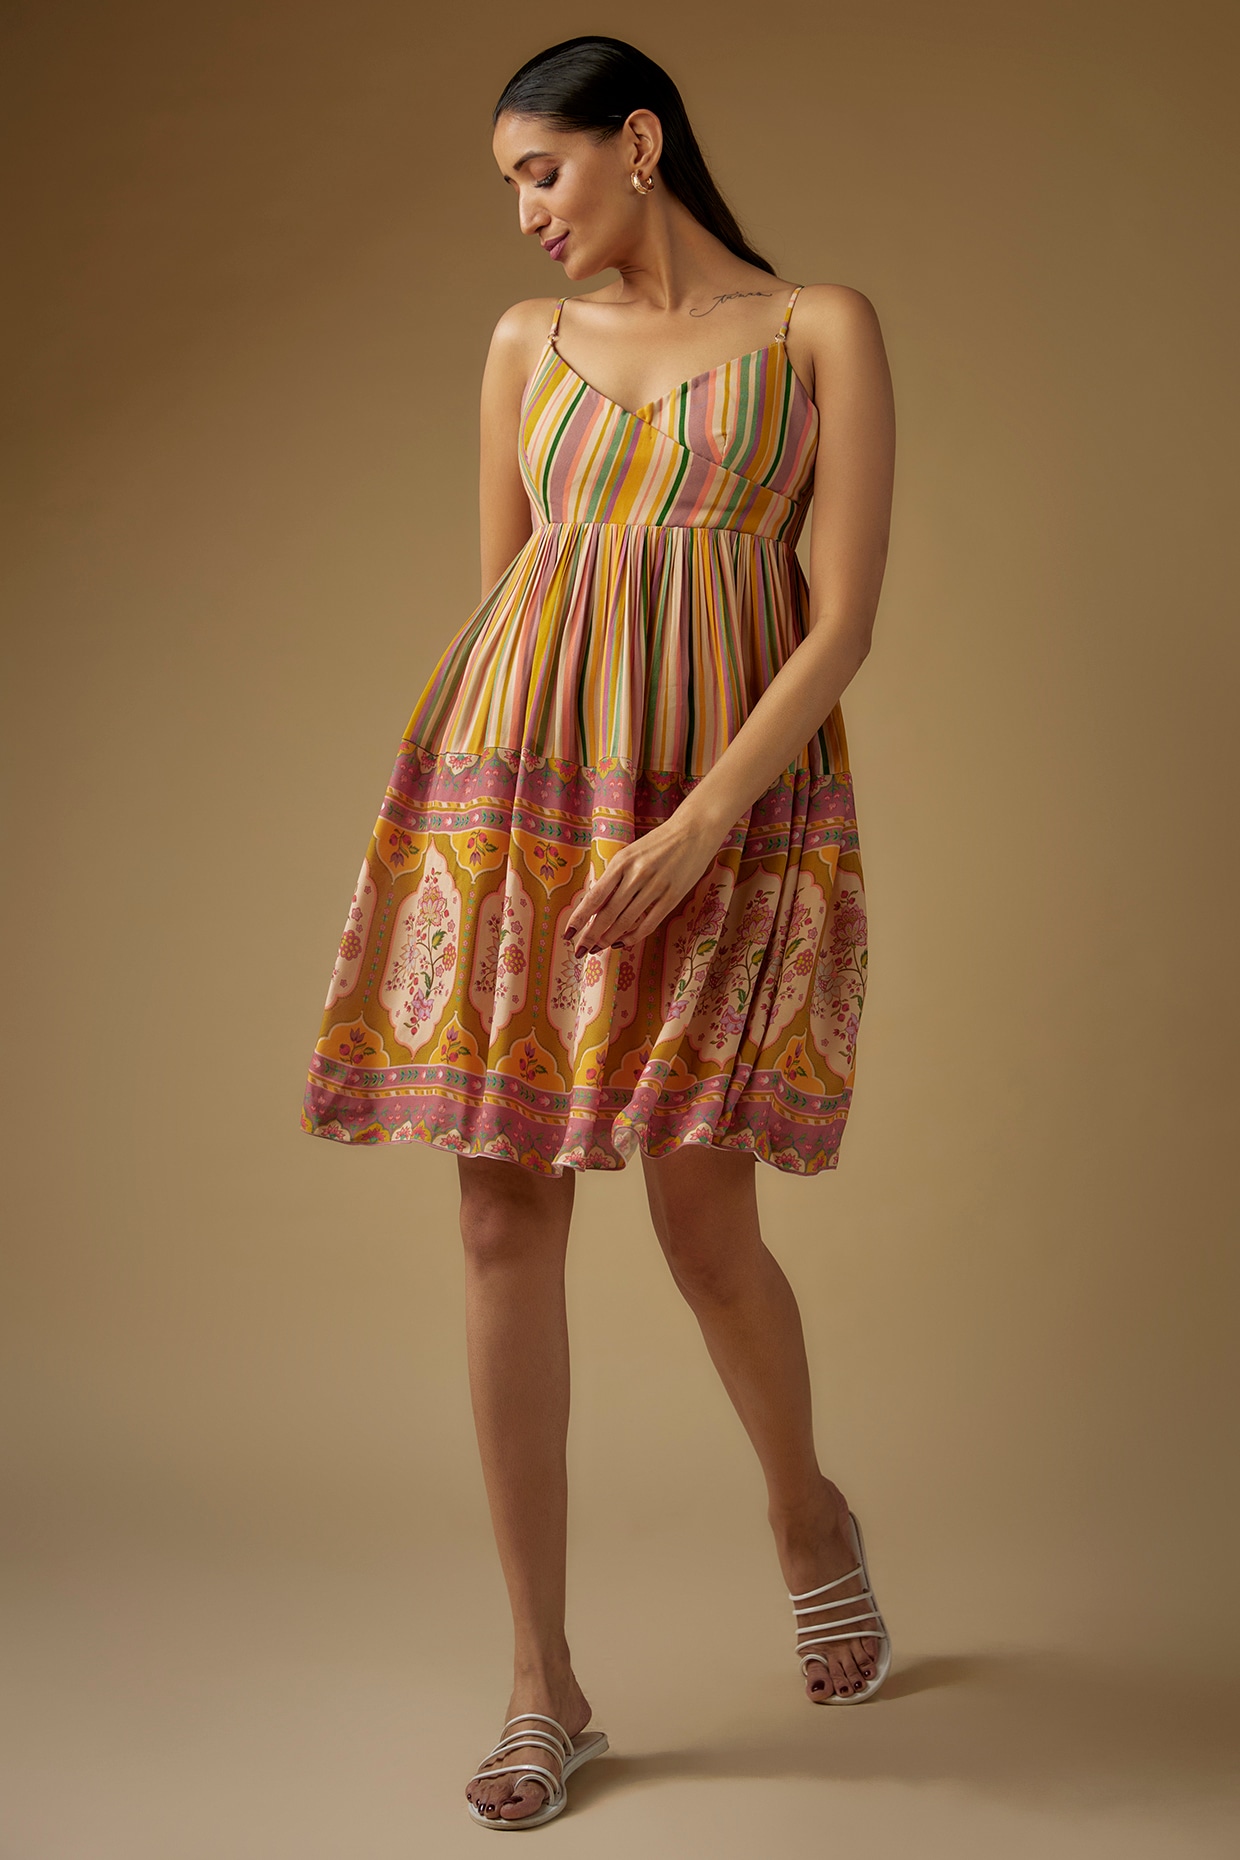 New haldi cermayod dress design 2023नई हल्दी सेरमायोड ड्रेस डिजाइन 2023 -  YouTube